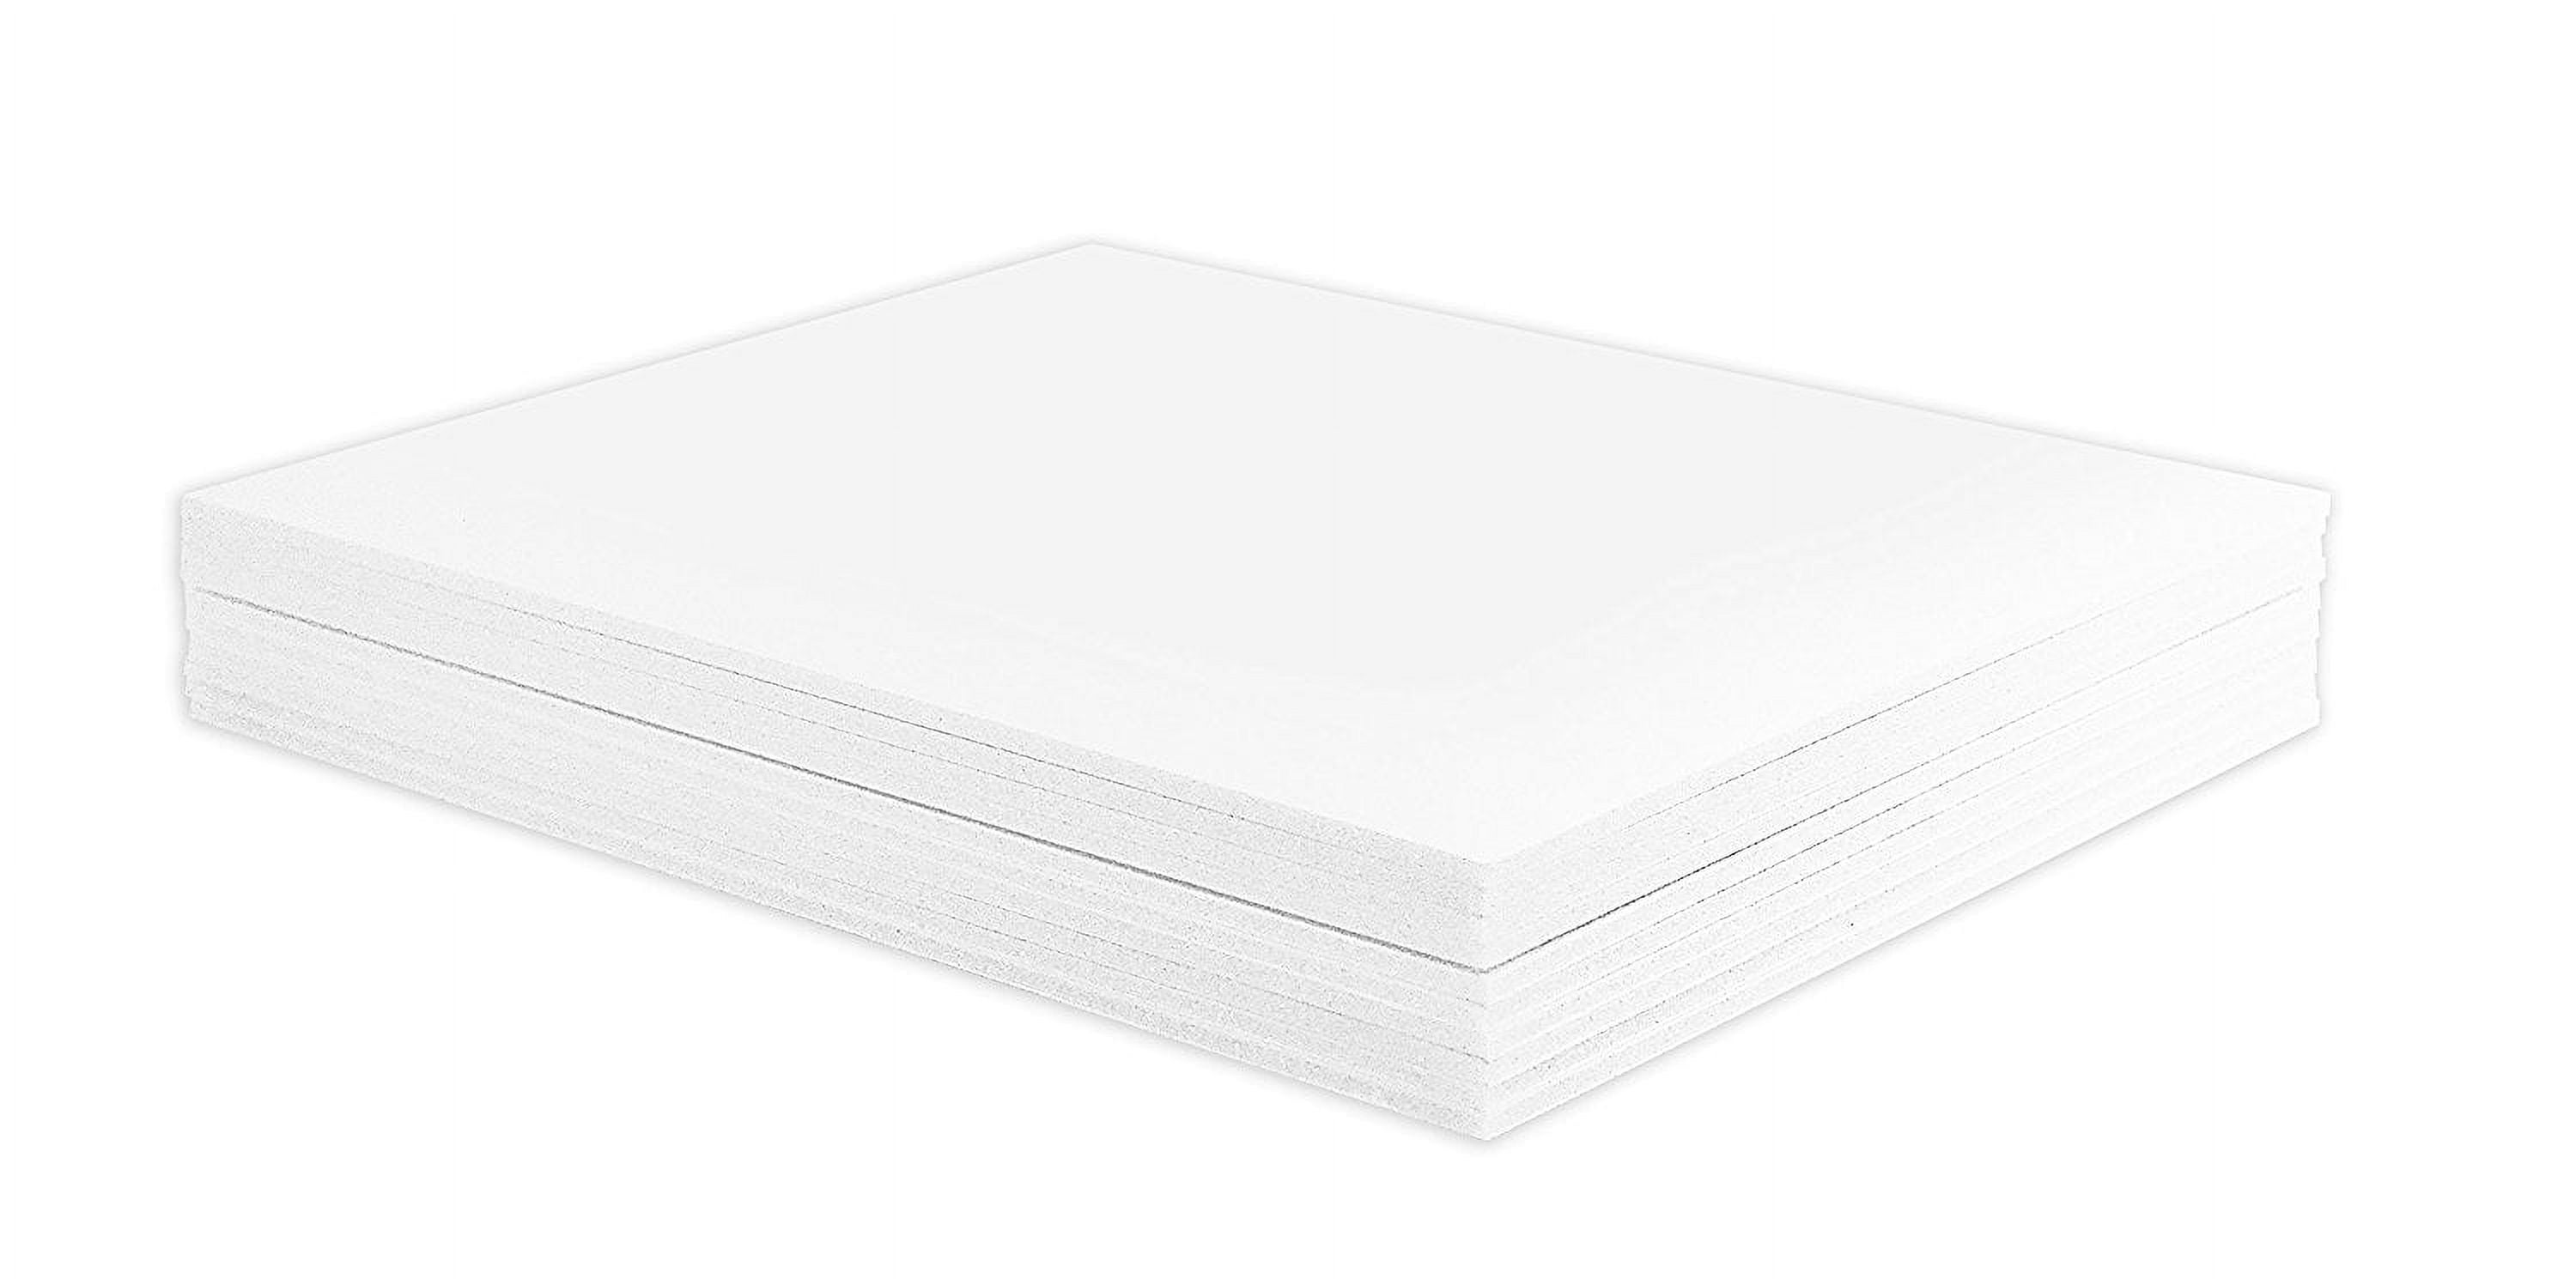 White Foam Board - 8 x 10 x 3/16, Pkg of 5 Sheets